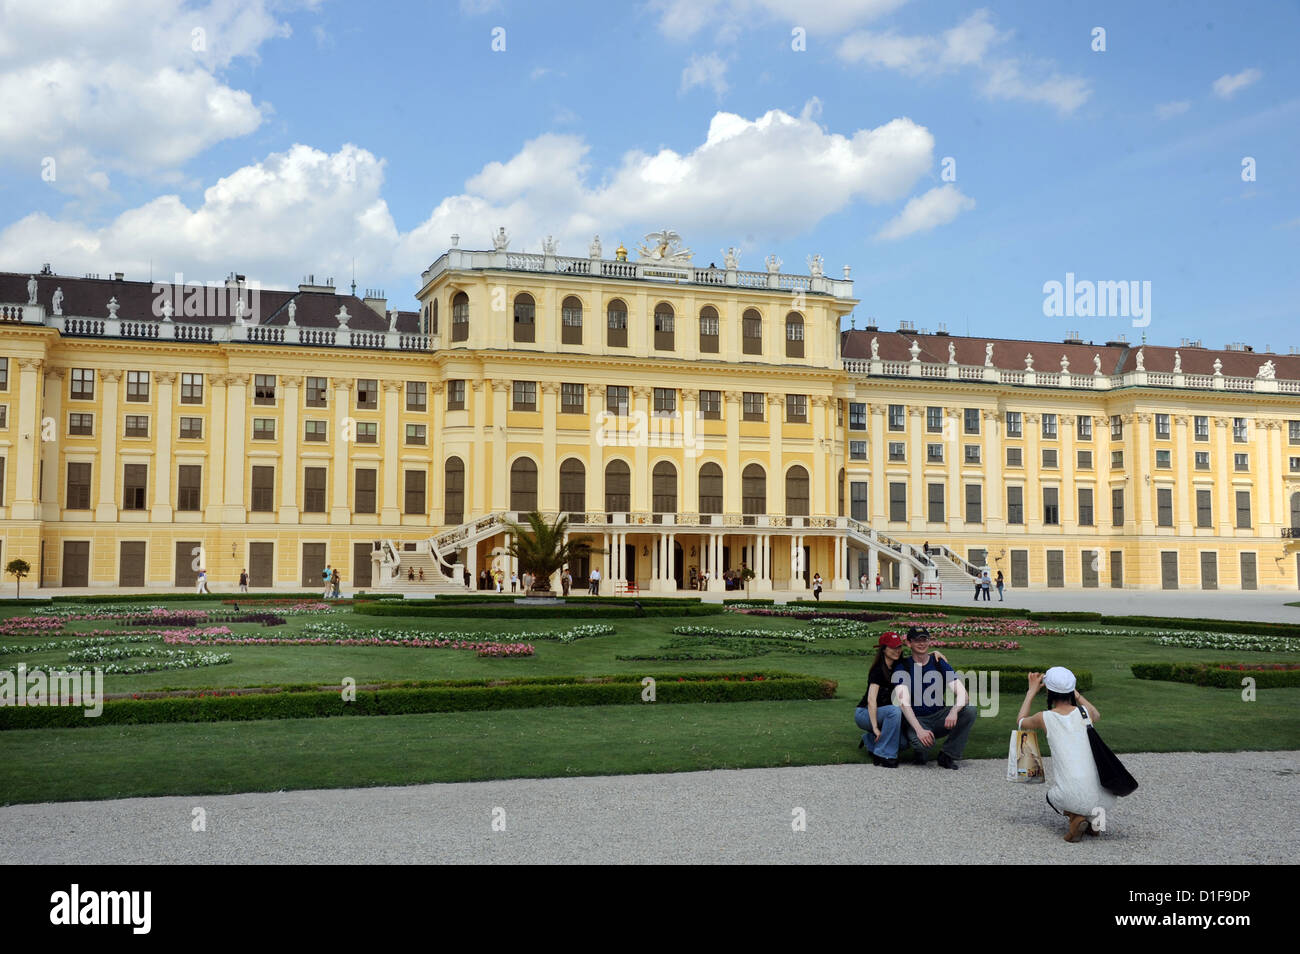 Vista del Palacio de Schönbrunn construido (1638-1643) en Viena, Austria, el 10 de mayo de 2012. El palacio es uno de los monumentos culturales más importantes en el país. Foto: Waltraud Grubitzsch Foto de stock